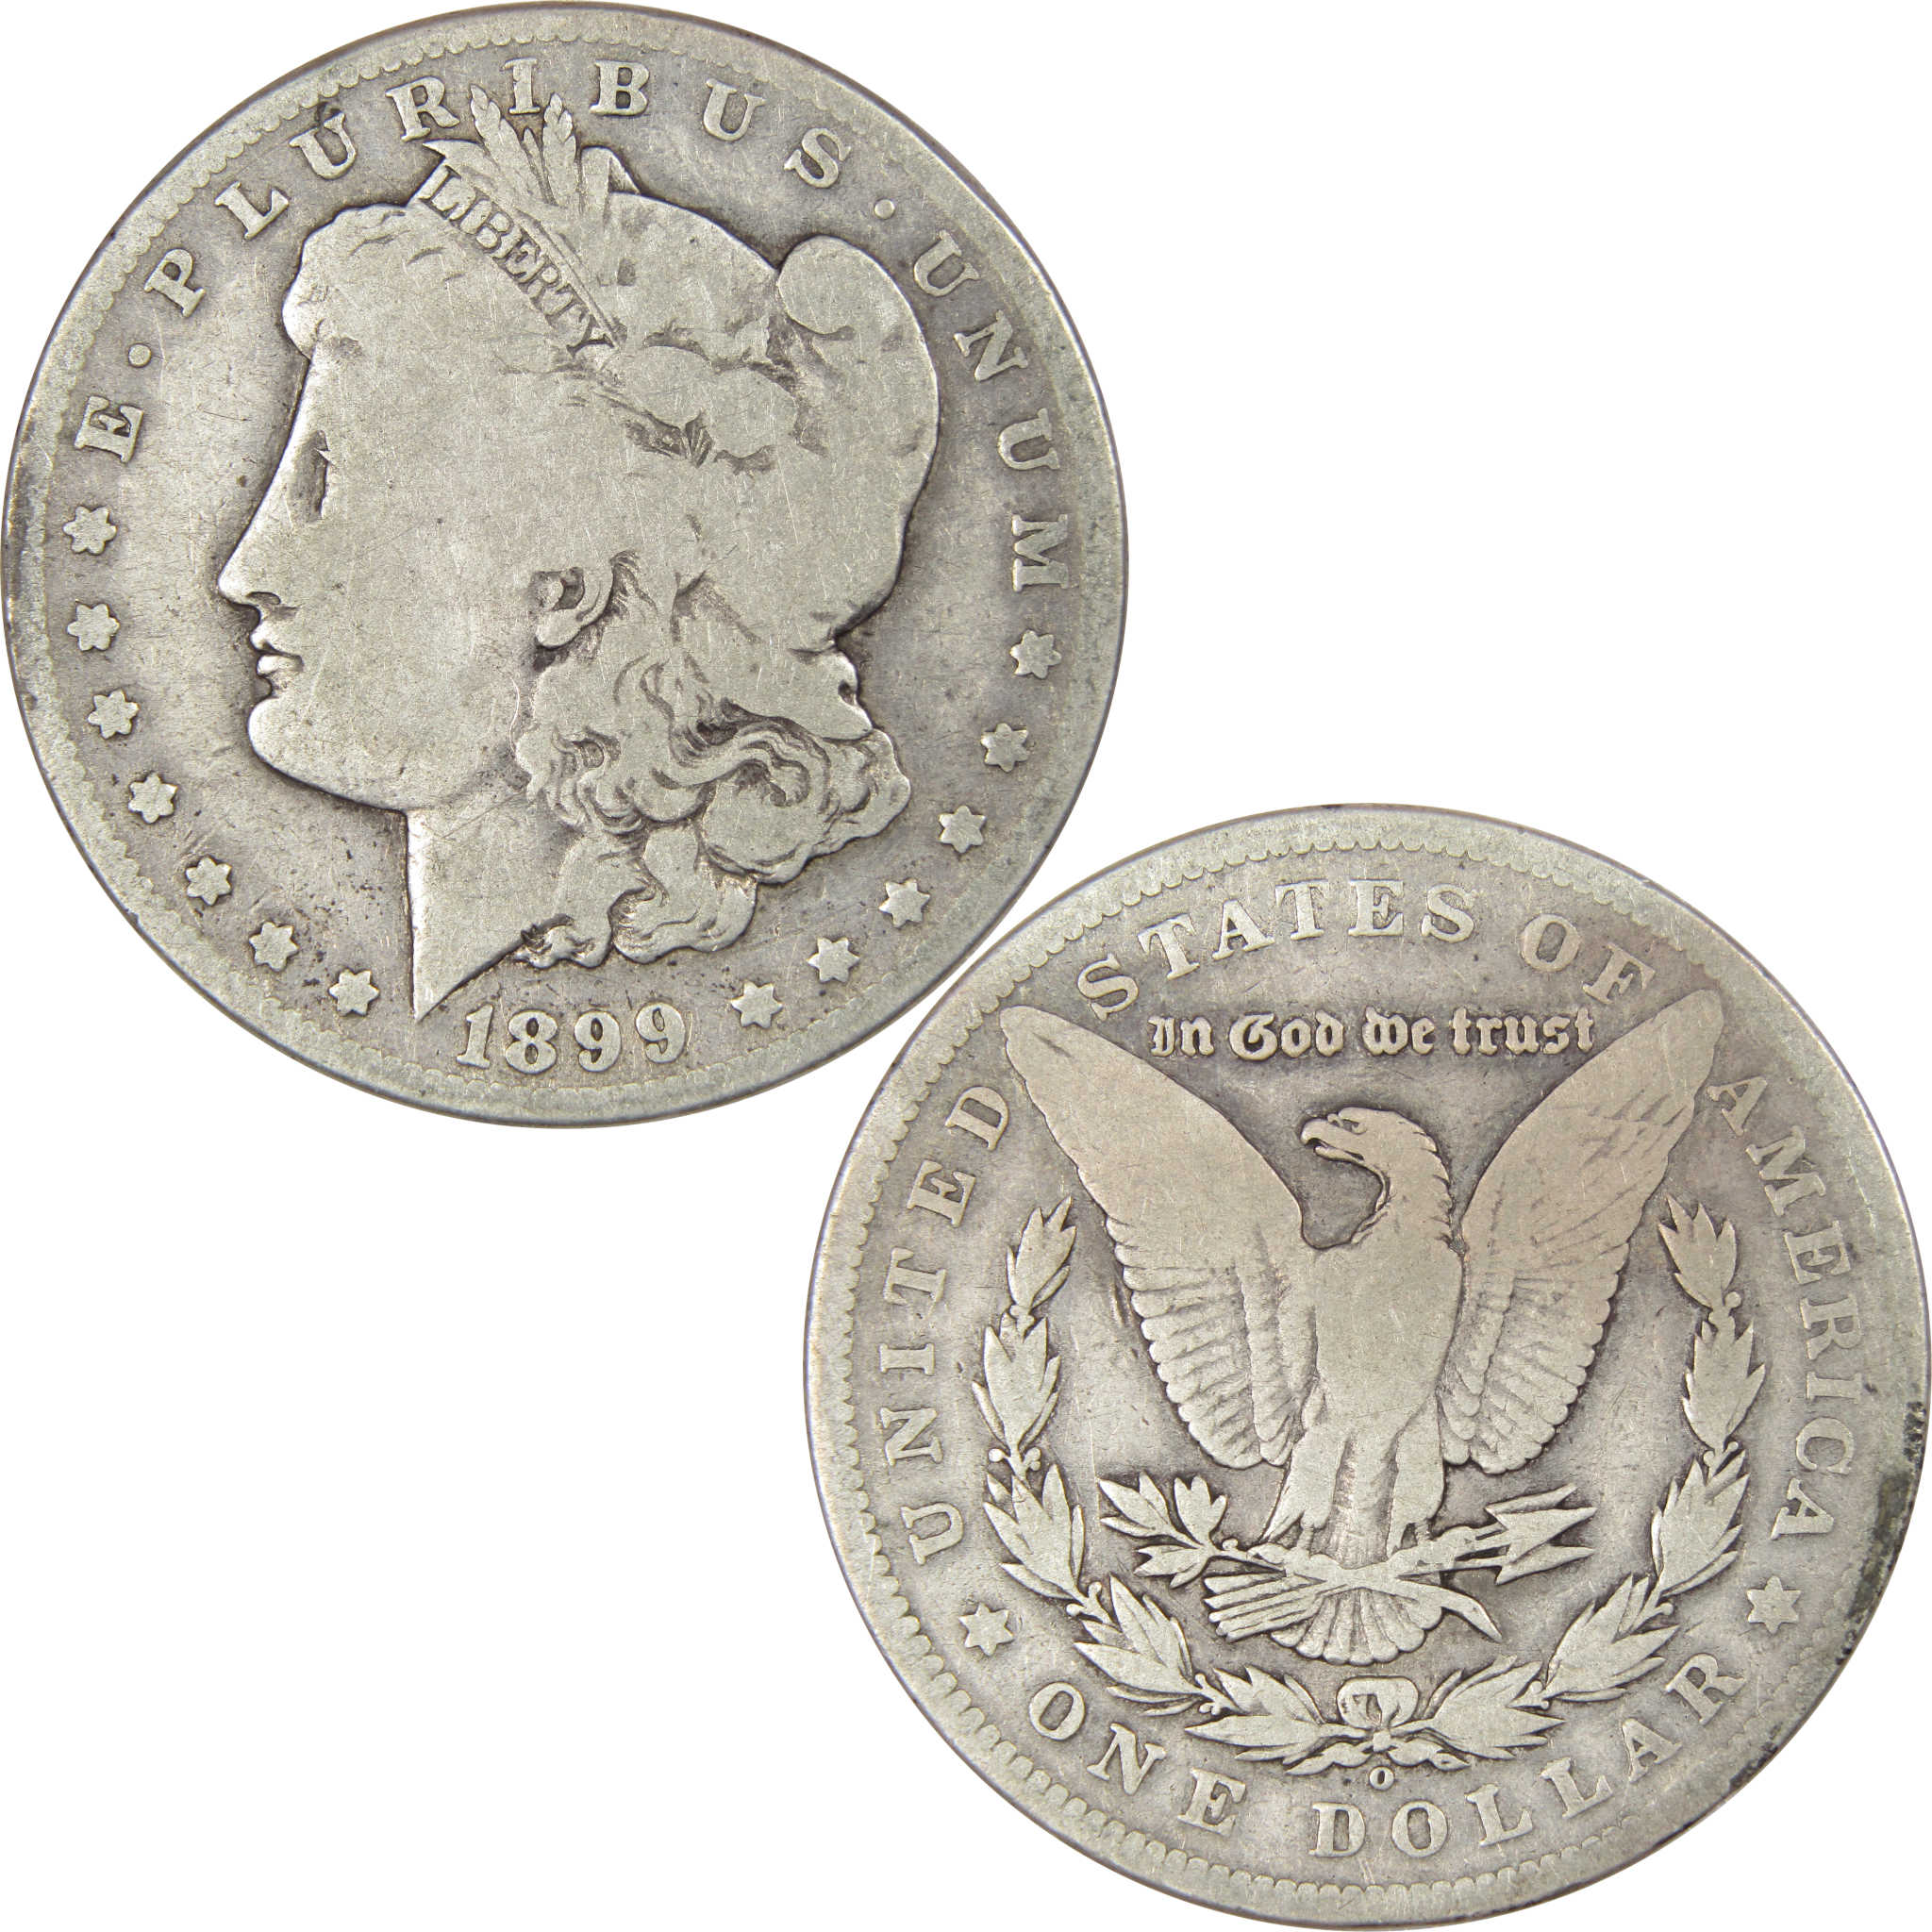 1899 O Micro O Morgan Dollar VG Very Good 90% Silver $1 Coin SKU:I4276